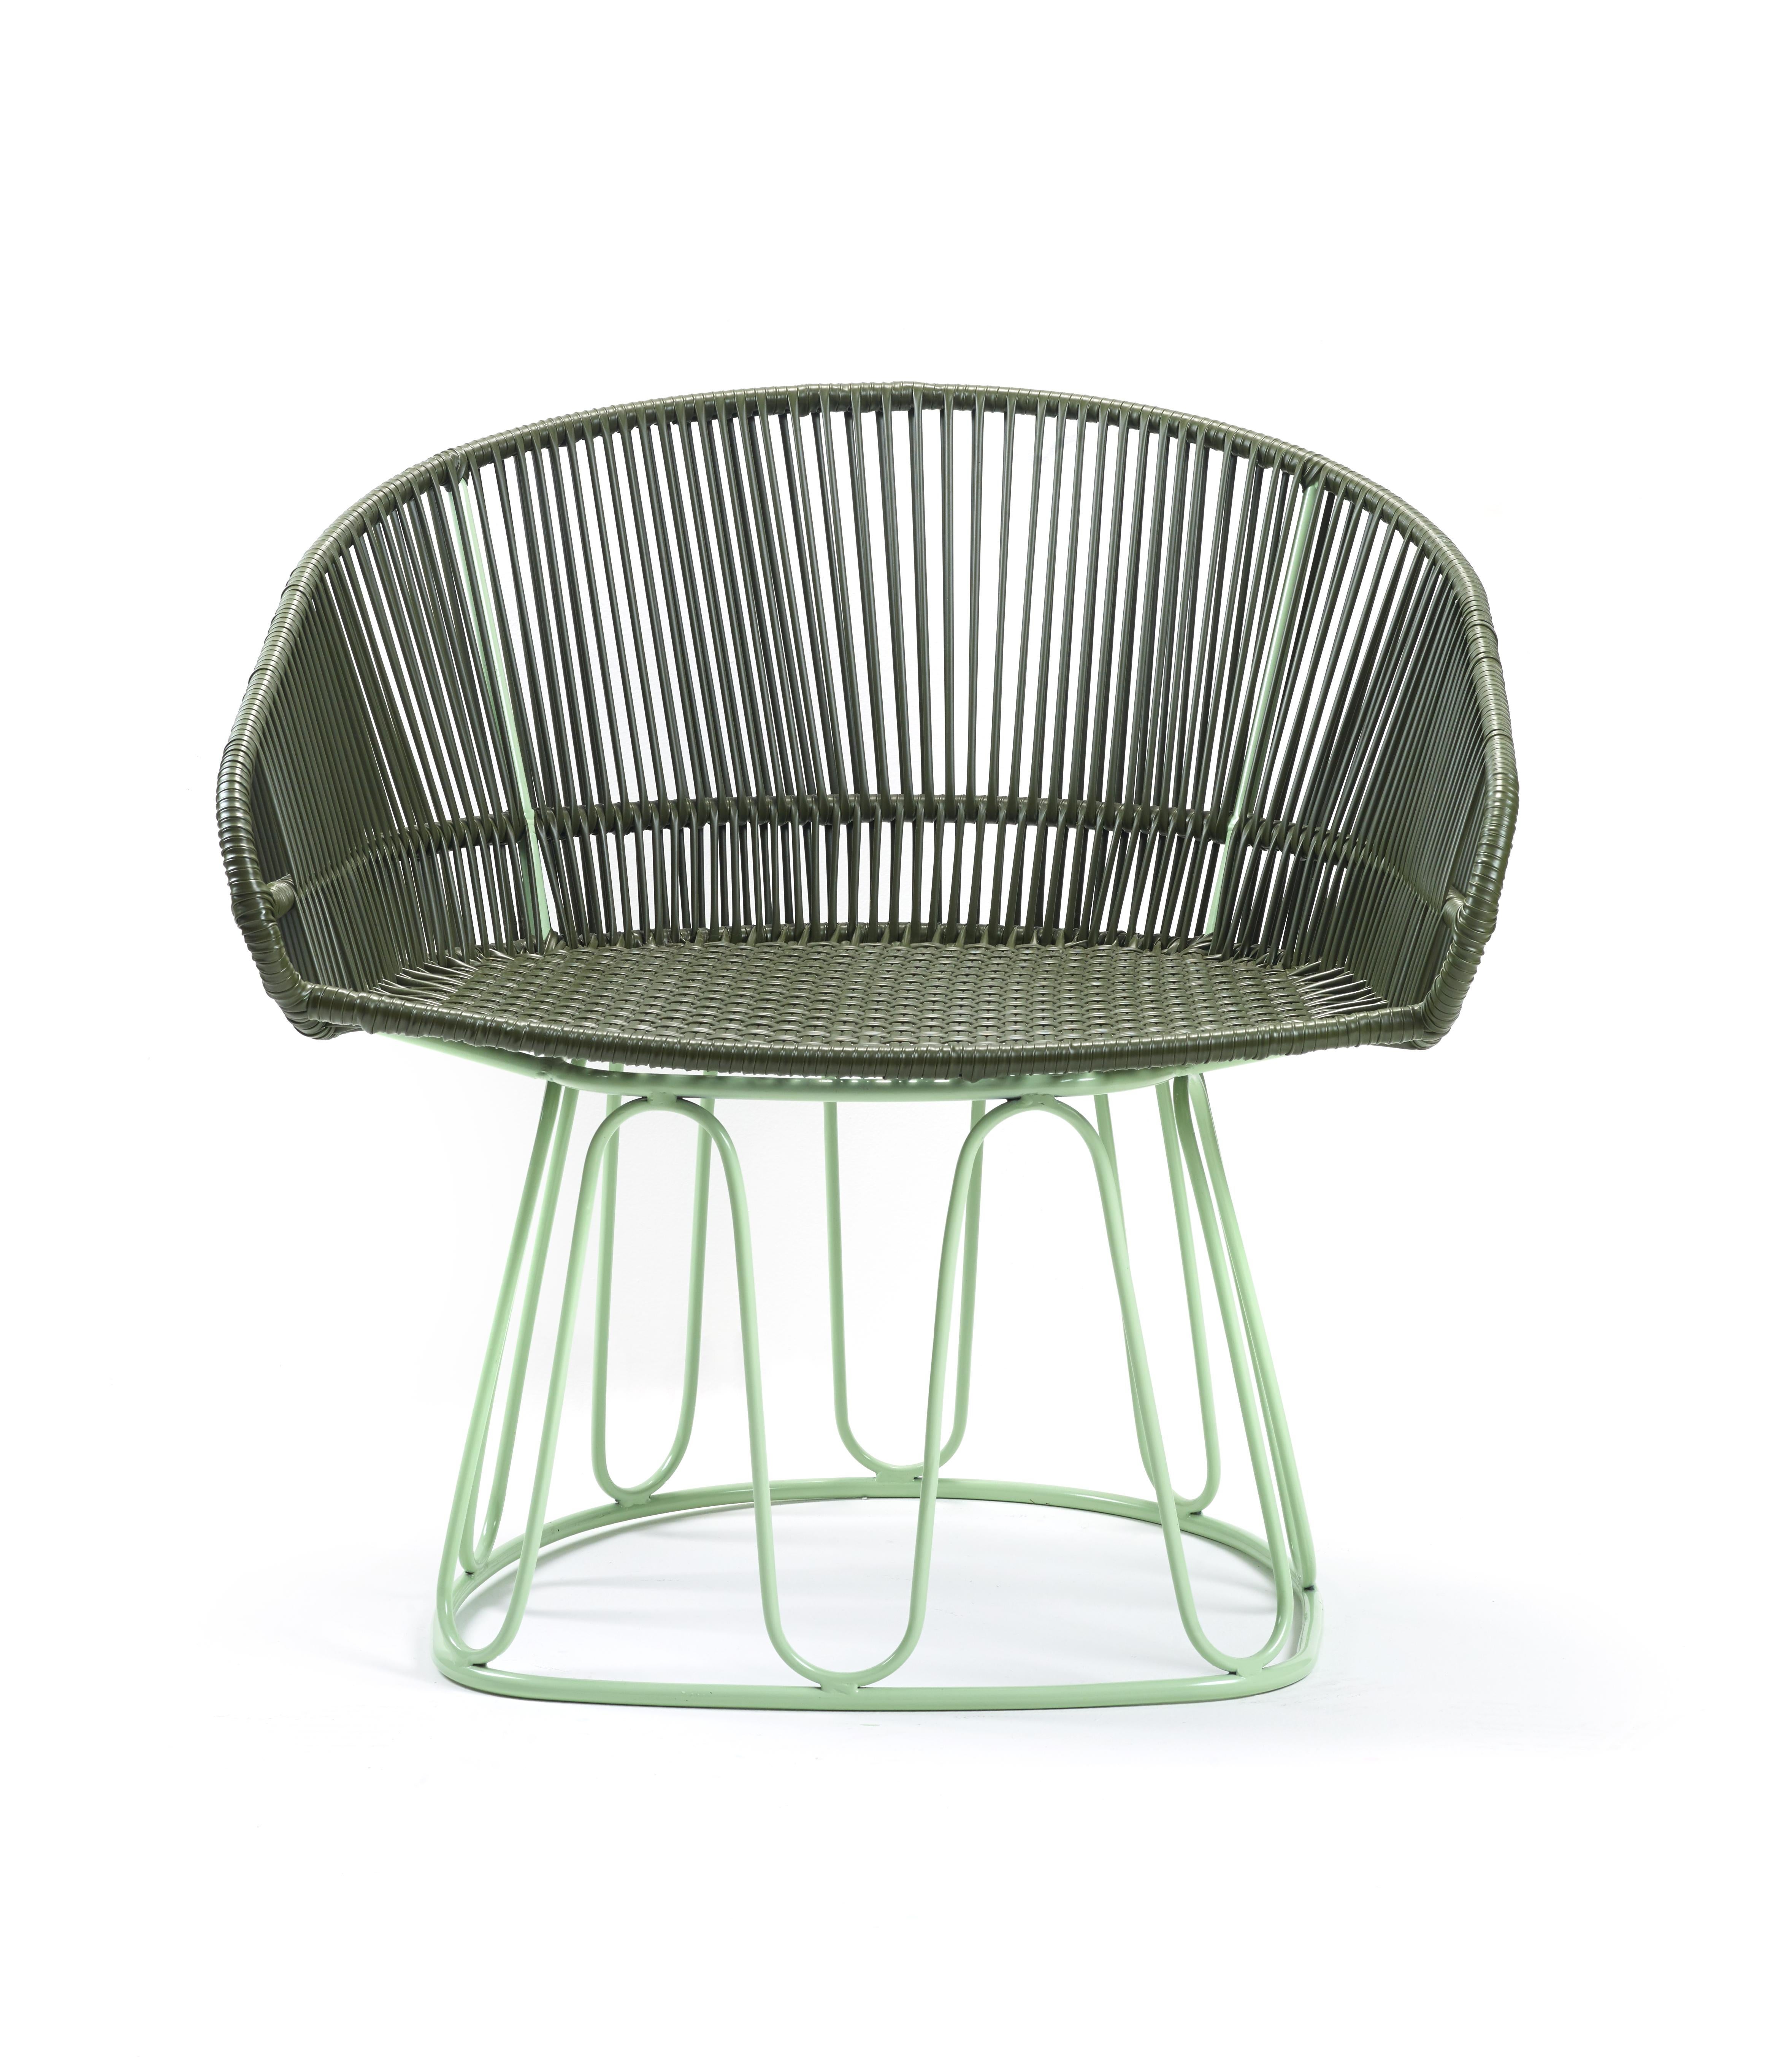 German Olive Circo Lounge Chair by Sebastian Herkner